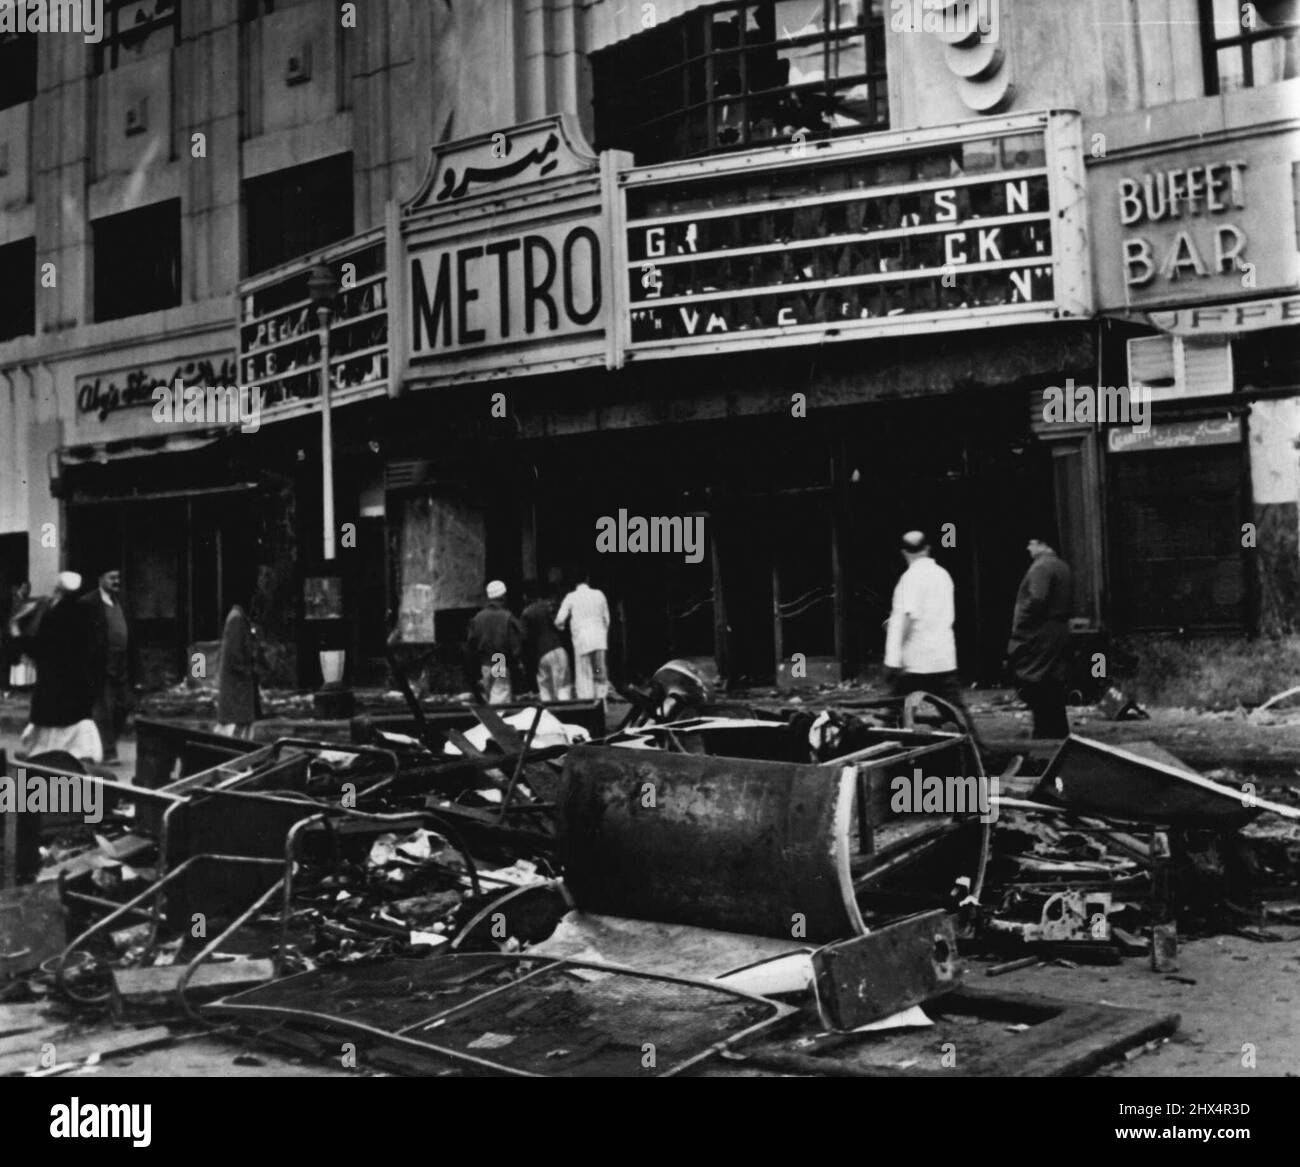 Questo era il Metro Cinema. La proiezione del film è stata "Valle della decisione". La folla frenetica lasciò solo una conchiglia. Febbraio 1, 1952. (Foto di Daily Mirror). Foto Stock